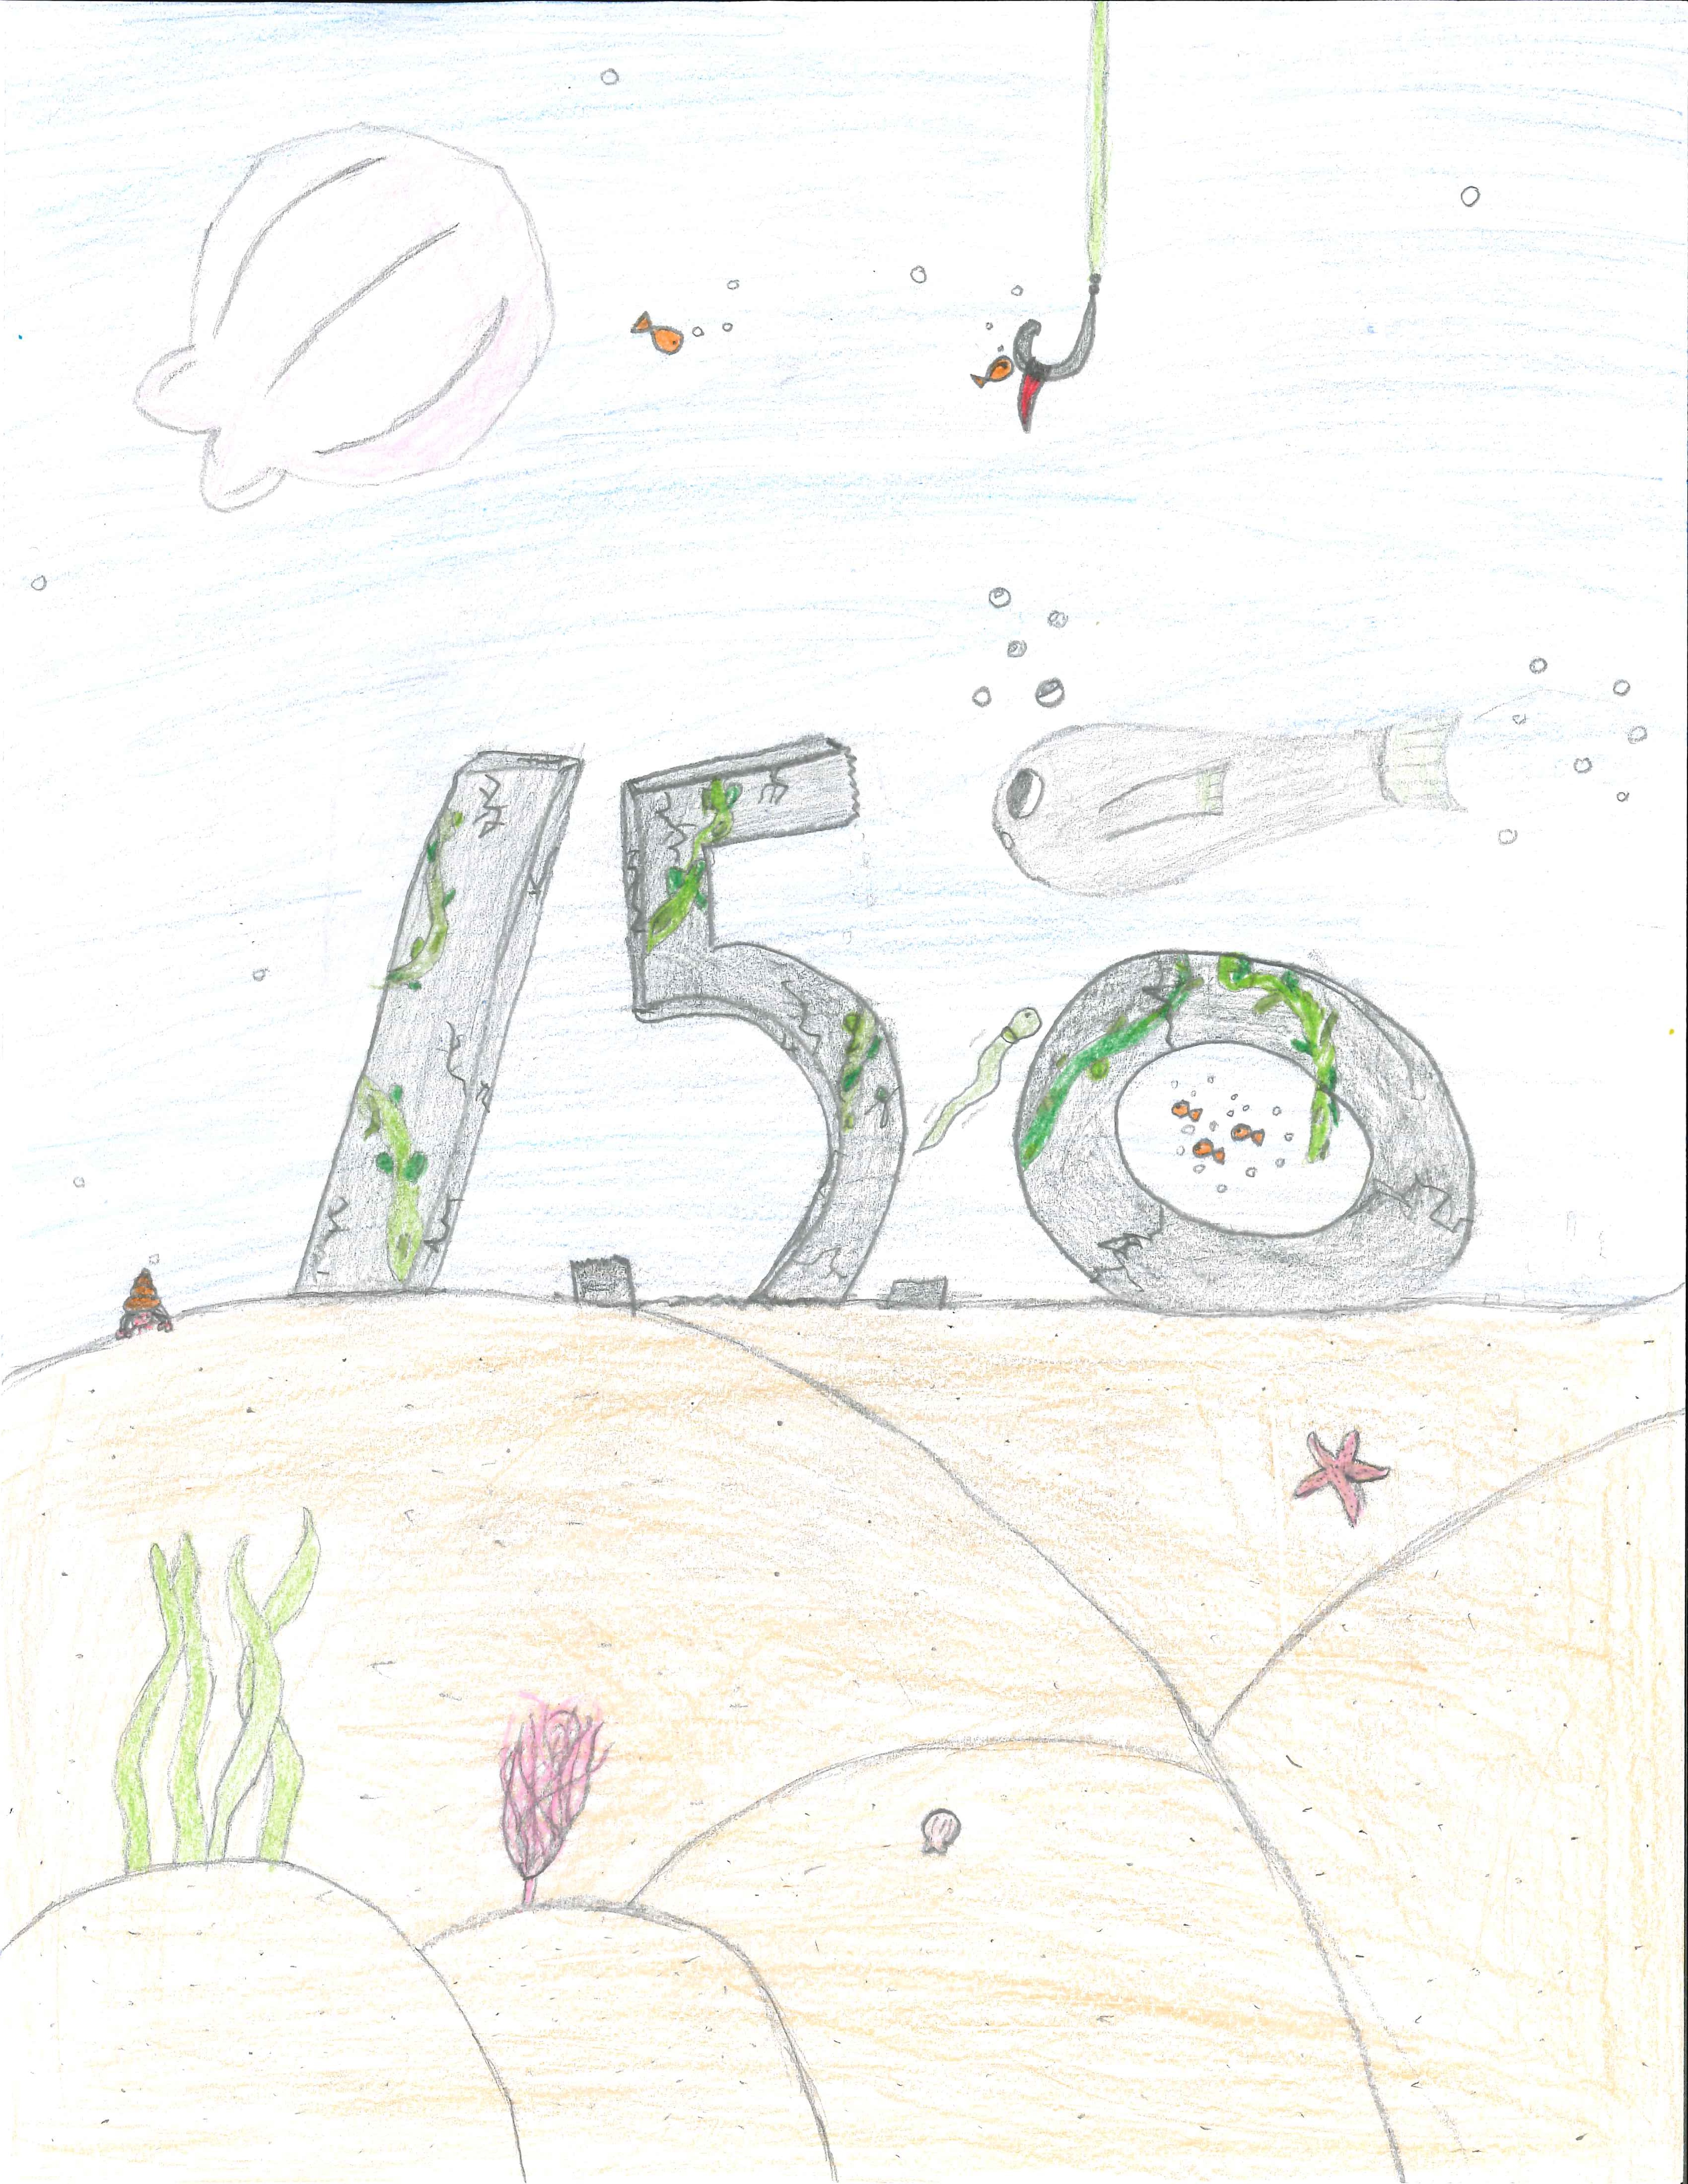 Cinquième finaliste : Sydnei M. 6e année. "Plancher océanique 150"